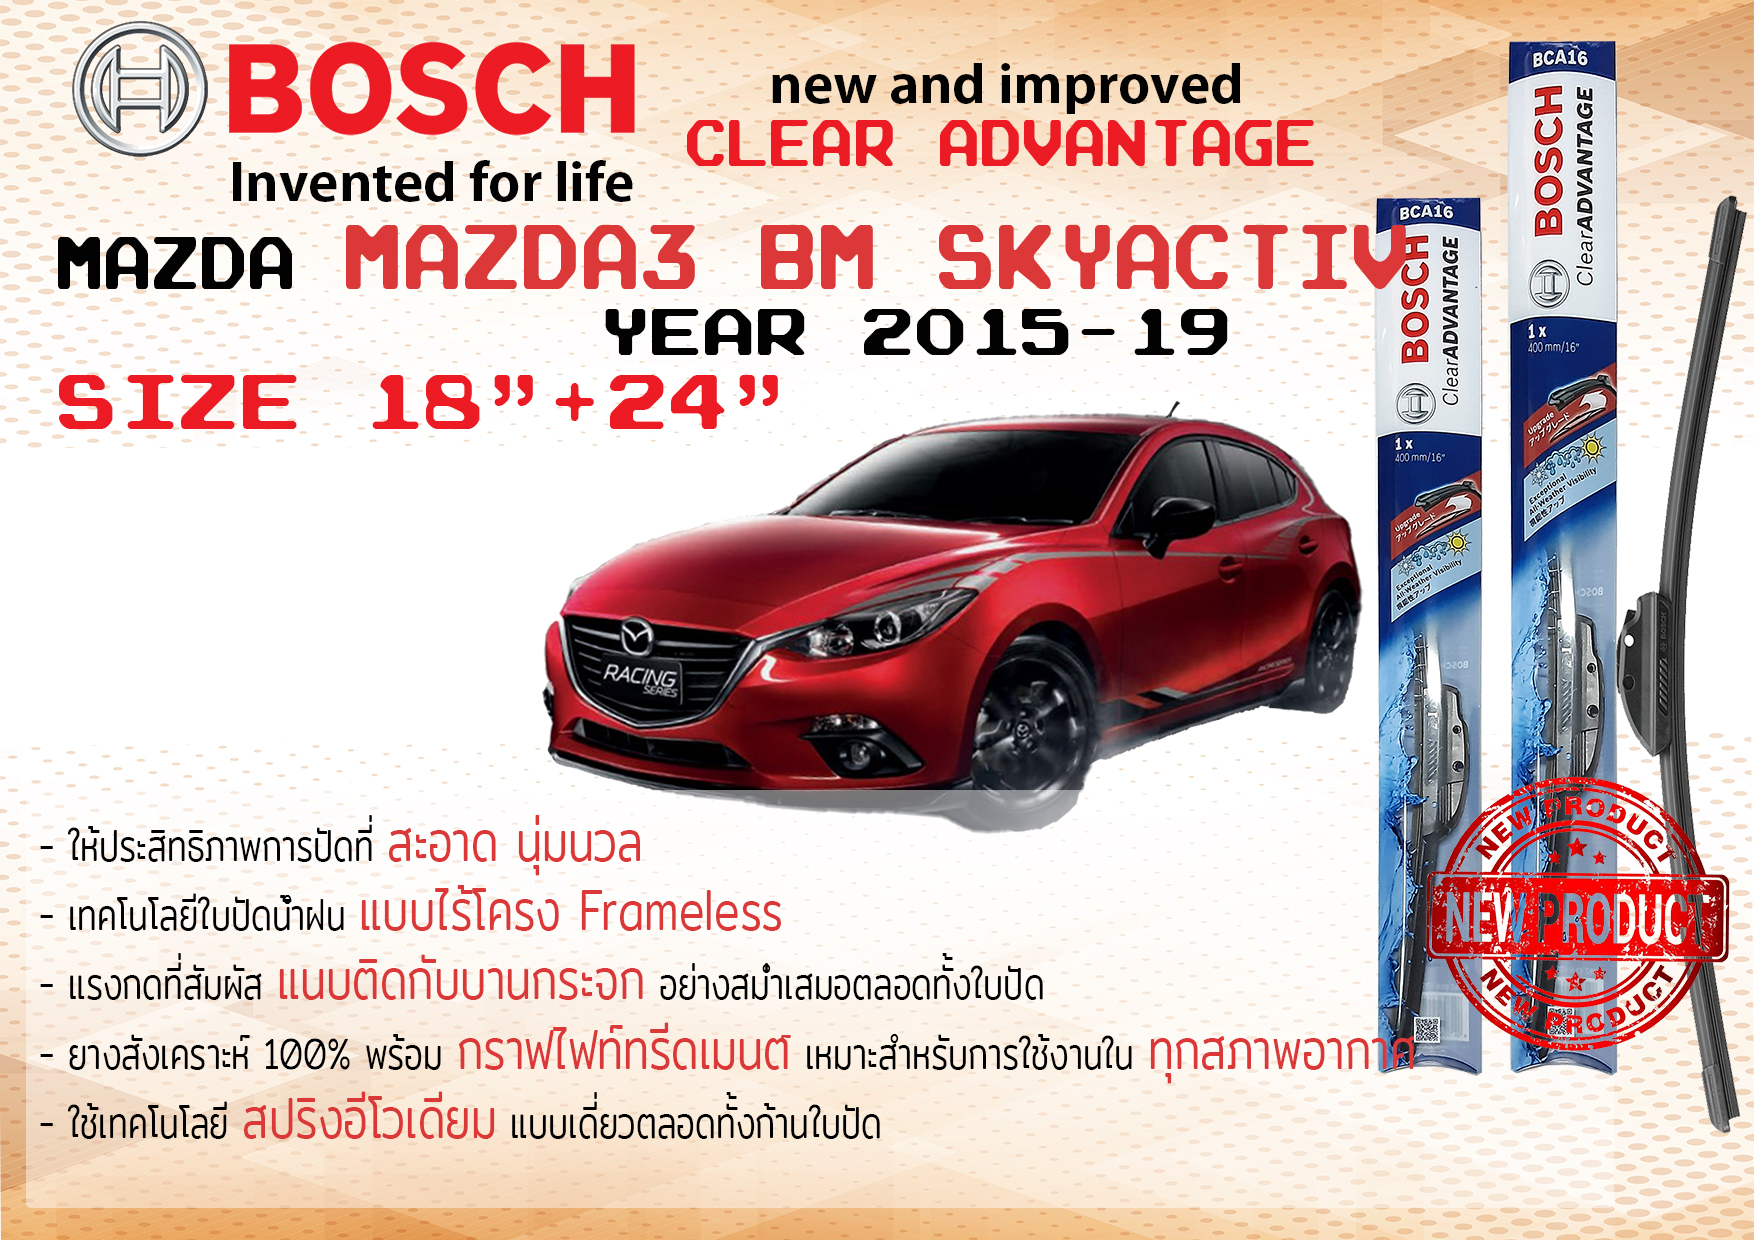 ใบปัดน้ำฝน คู่หน้า Bosch Clear Advantage frameless ก้านอ่อน ขนาด 18”+24” สำหรับรถ Mazda 3 BM skyactiv, AXELA ปี 2015-2019 ปี 15,16,17,18,19 มาสด้า มาซดา มาสดา สาม สกาย ทนแสง UV